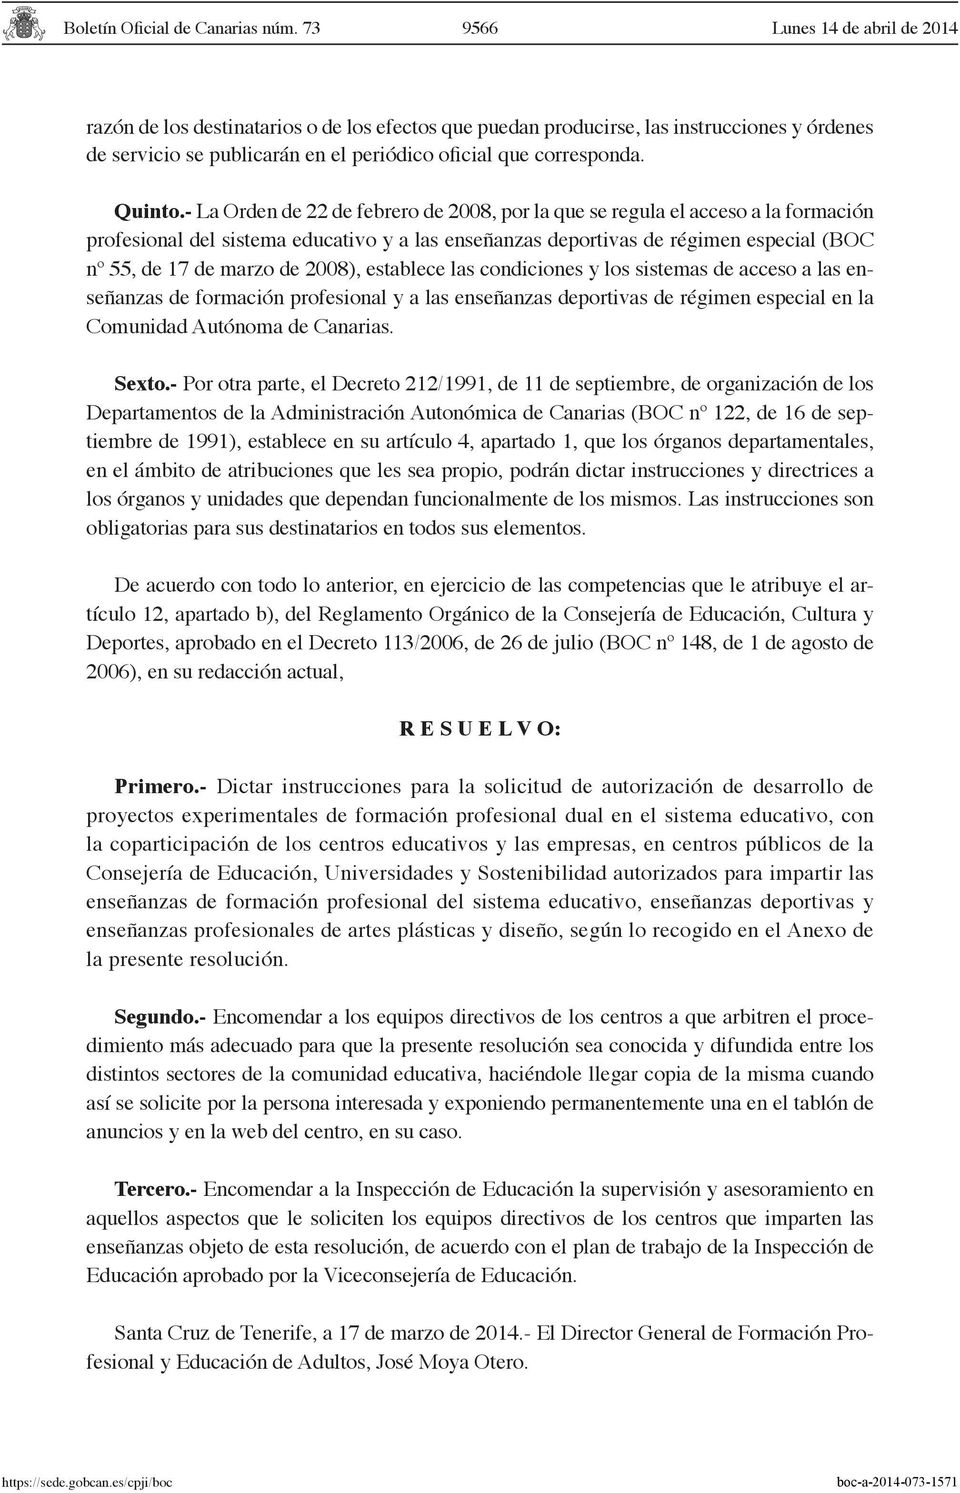 2008), establece las condiciones y los sistemas de acceso a las enseñanzas de formación profesional y a las enseñanzas deportivas de régimen especial en la Comunidad Autónoma de Canarias. Sexto.